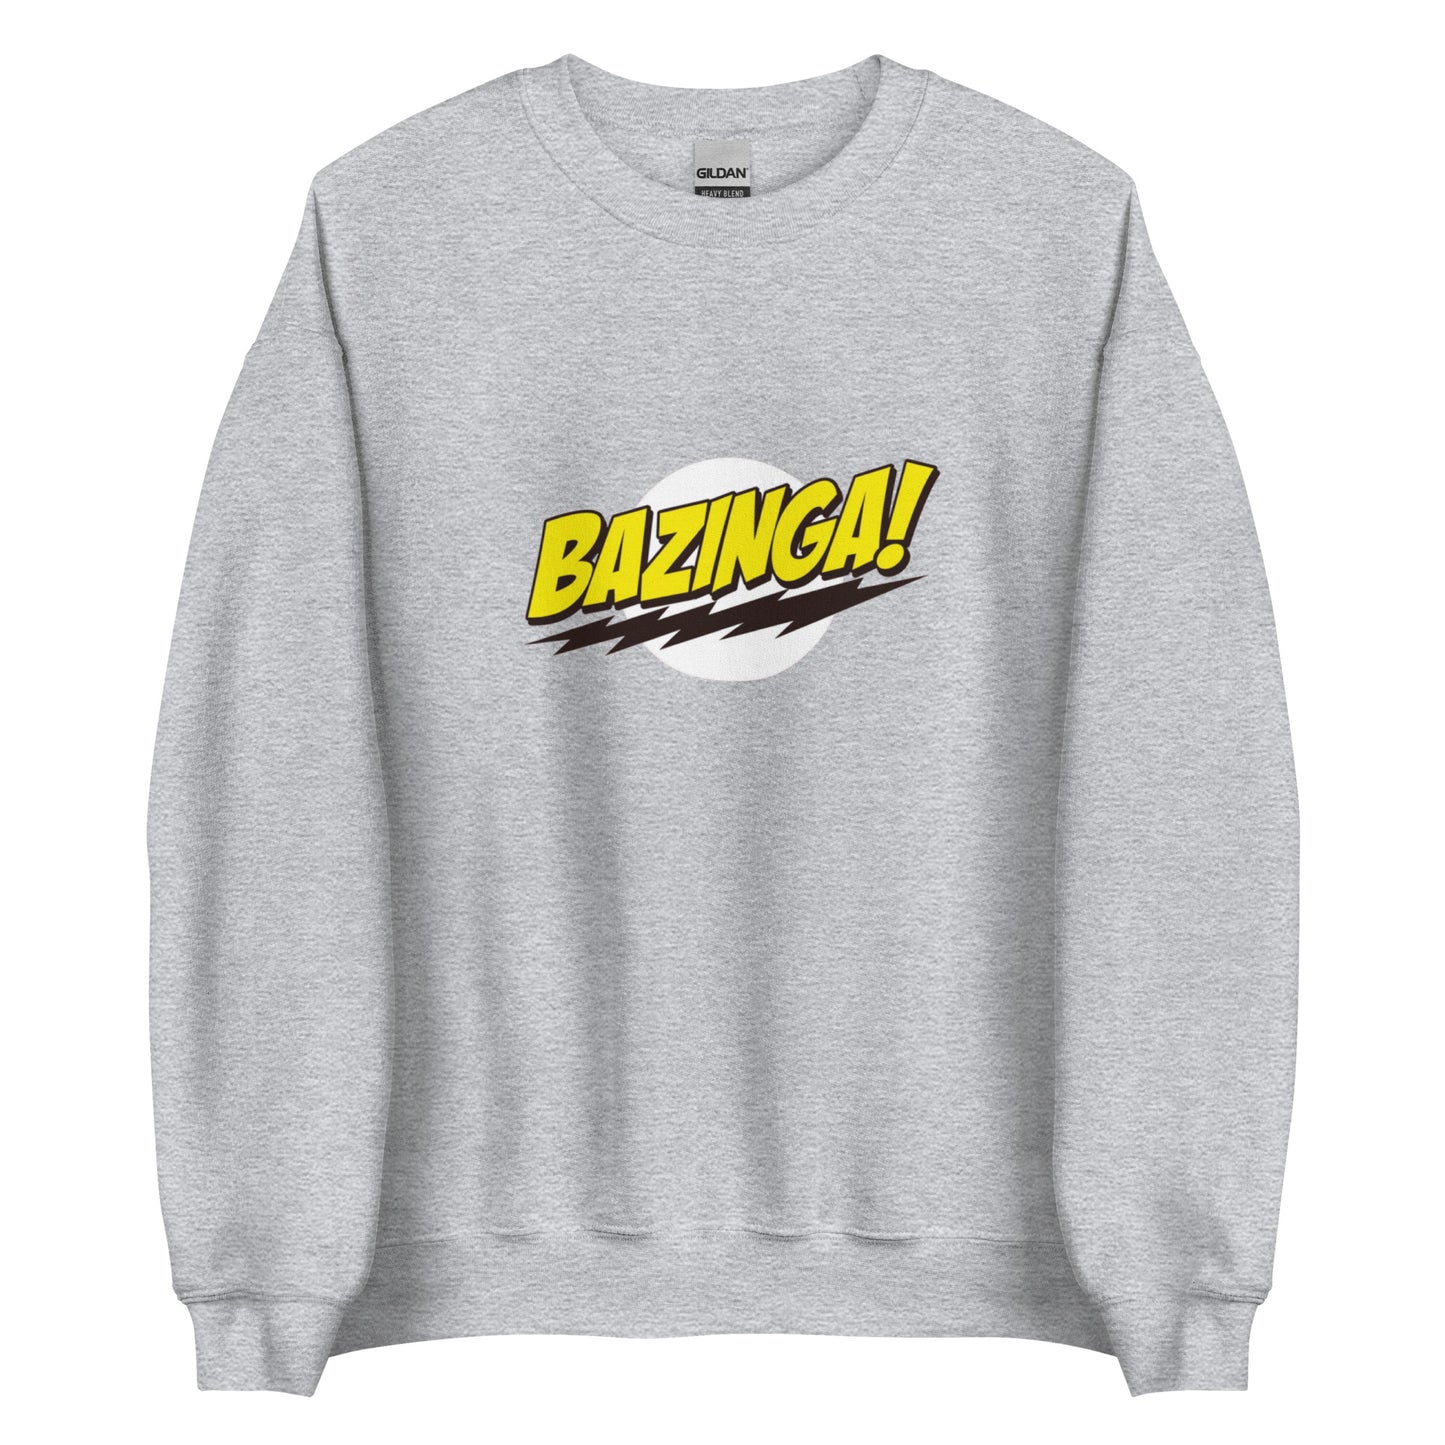 Sweatshirt Bazinga